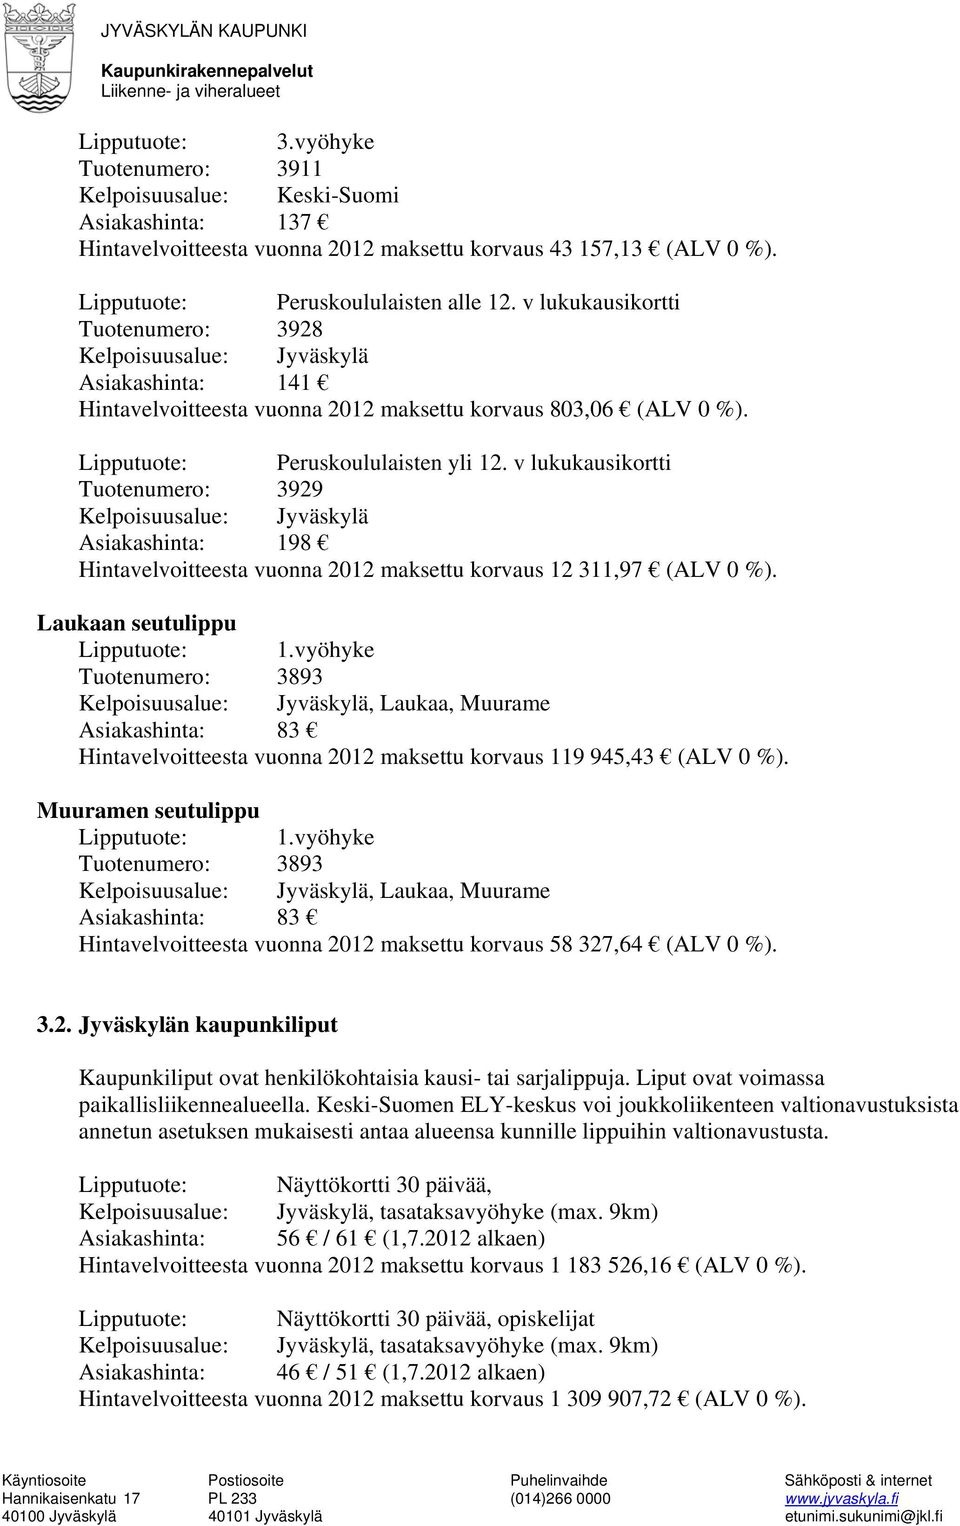 v lukukausikortti Tuotenumero: 3929 Kelpoisuusalue: Jyväskylä Asiakashinta: 198 Hintavelvoitteesta vuonna 2012 maksettu korvaus 12 311,97 (ALV 0 %). Laukaan seutulippu Lipputuote: 1.